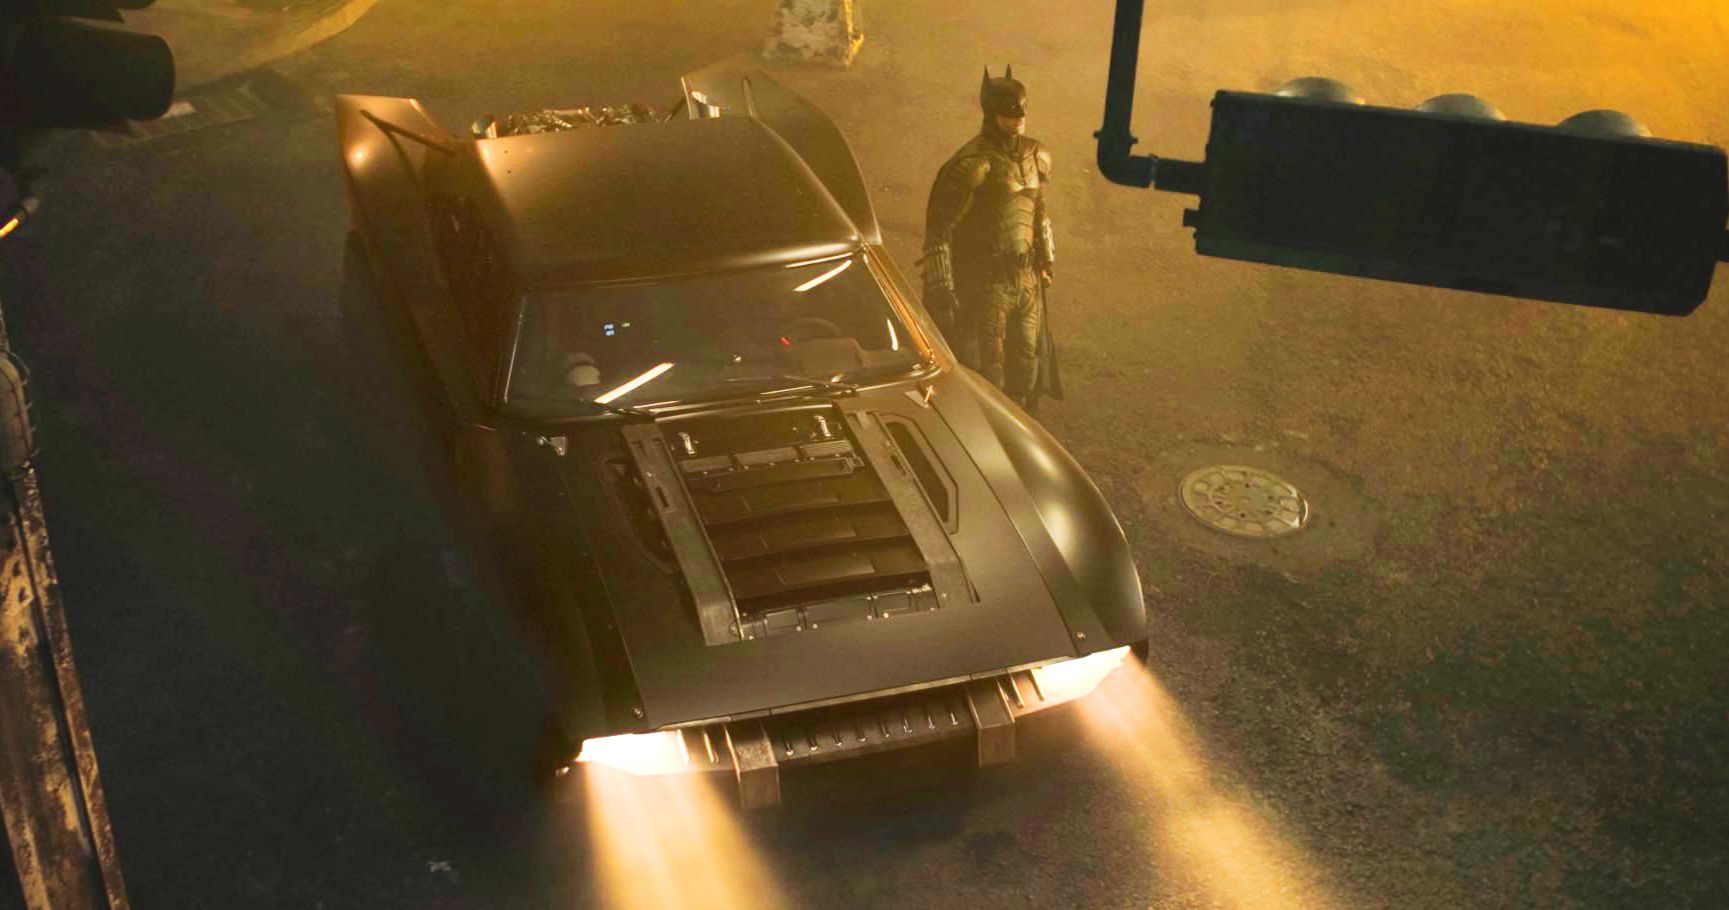 The Batman Hot Wheels Car Brings a Better Look at the New Batmobile